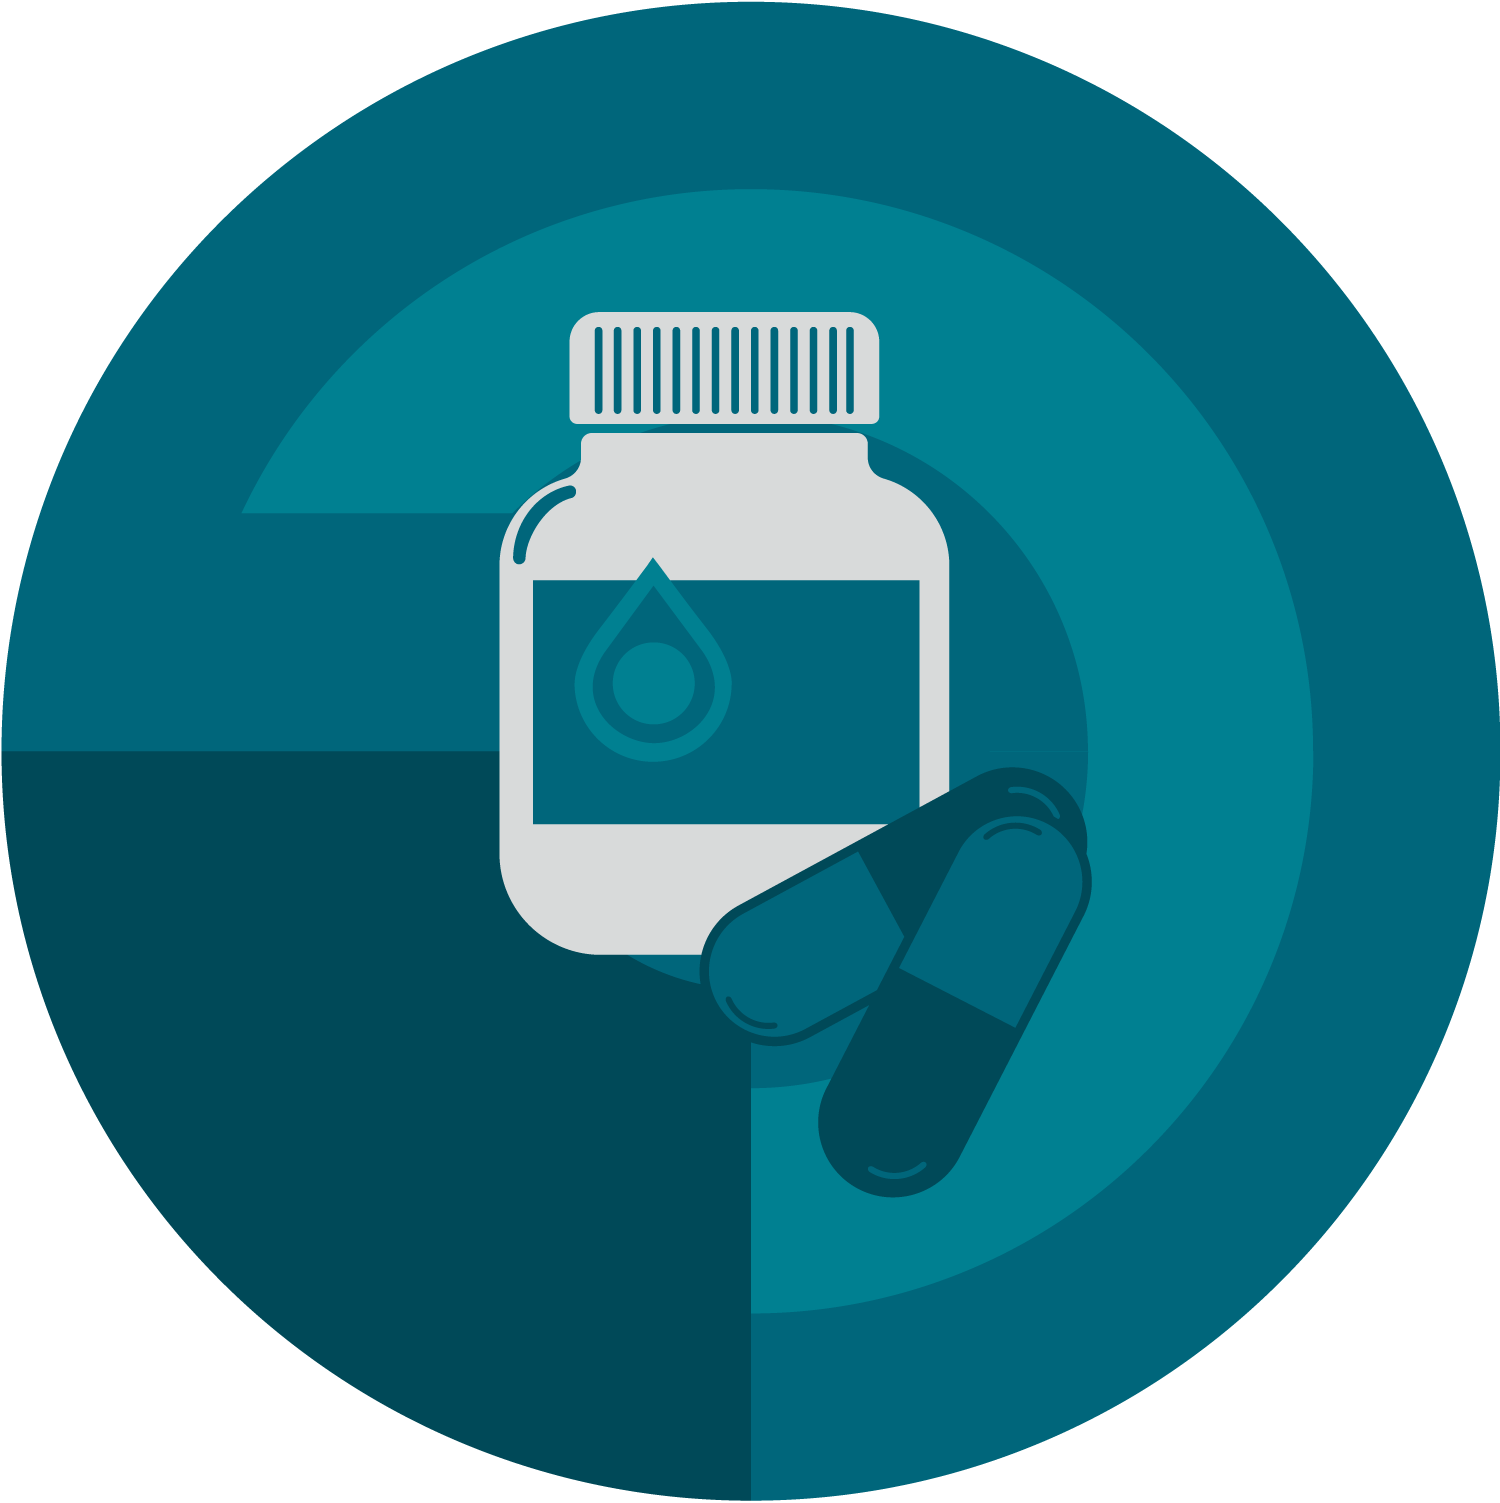  Unimedic Pharma tillhandahåller ett brett sortiment av registrerade specialistläkemedel inom ett flertal terapiområden såsom akutsjukvård, smärta, infektionssjukdomar, gastroenterologi, urologi och beroendevård.